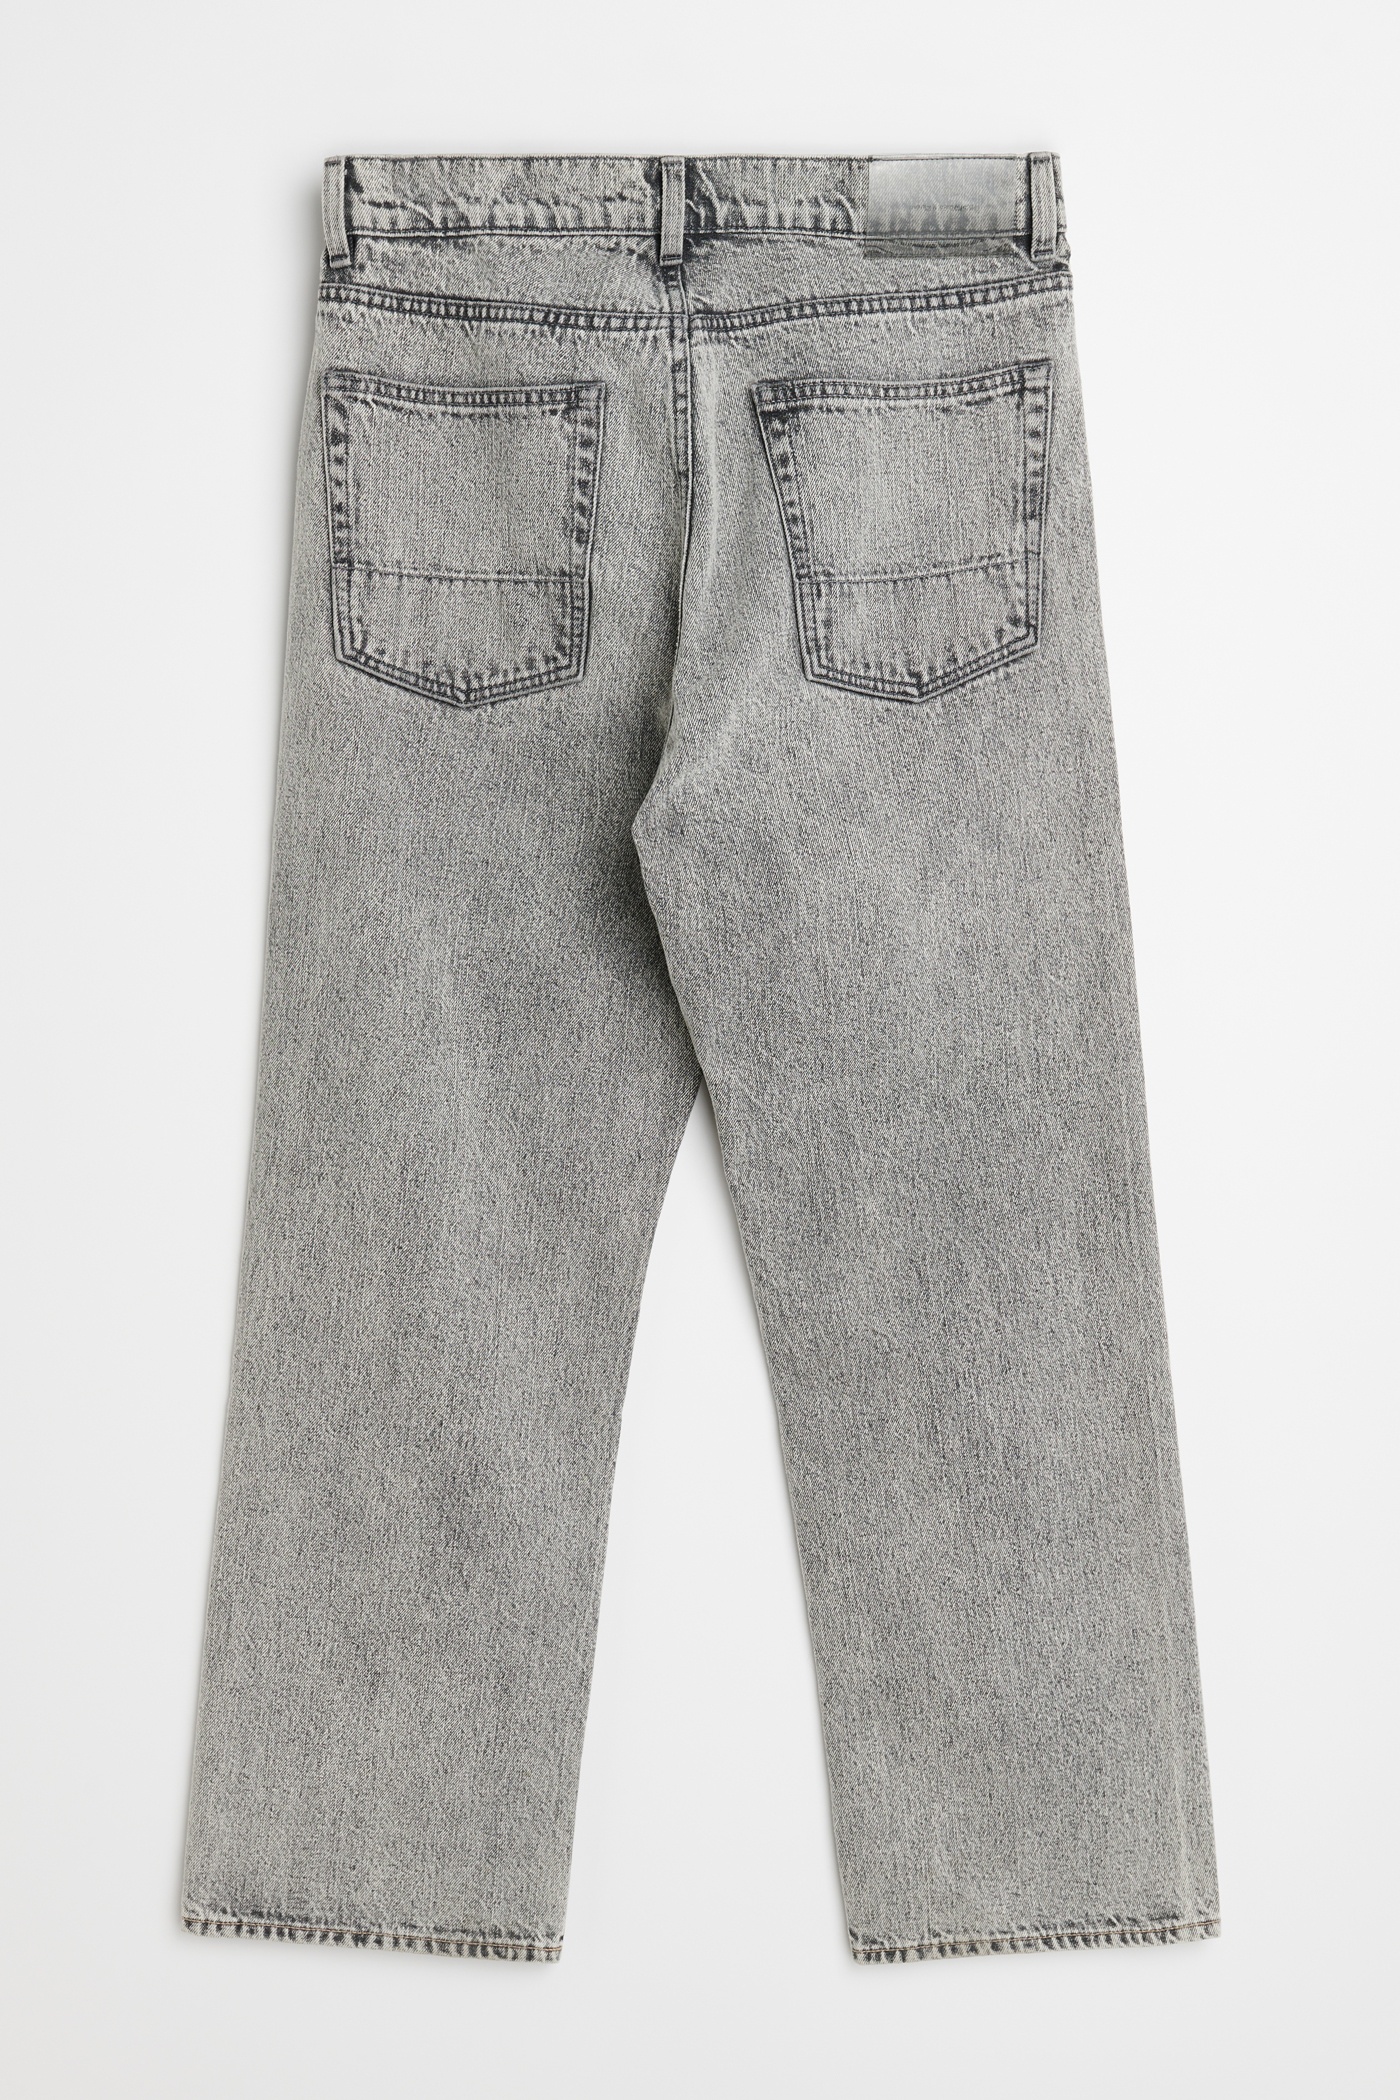 Third Cut Jeans Superbleach Black Denim - 6